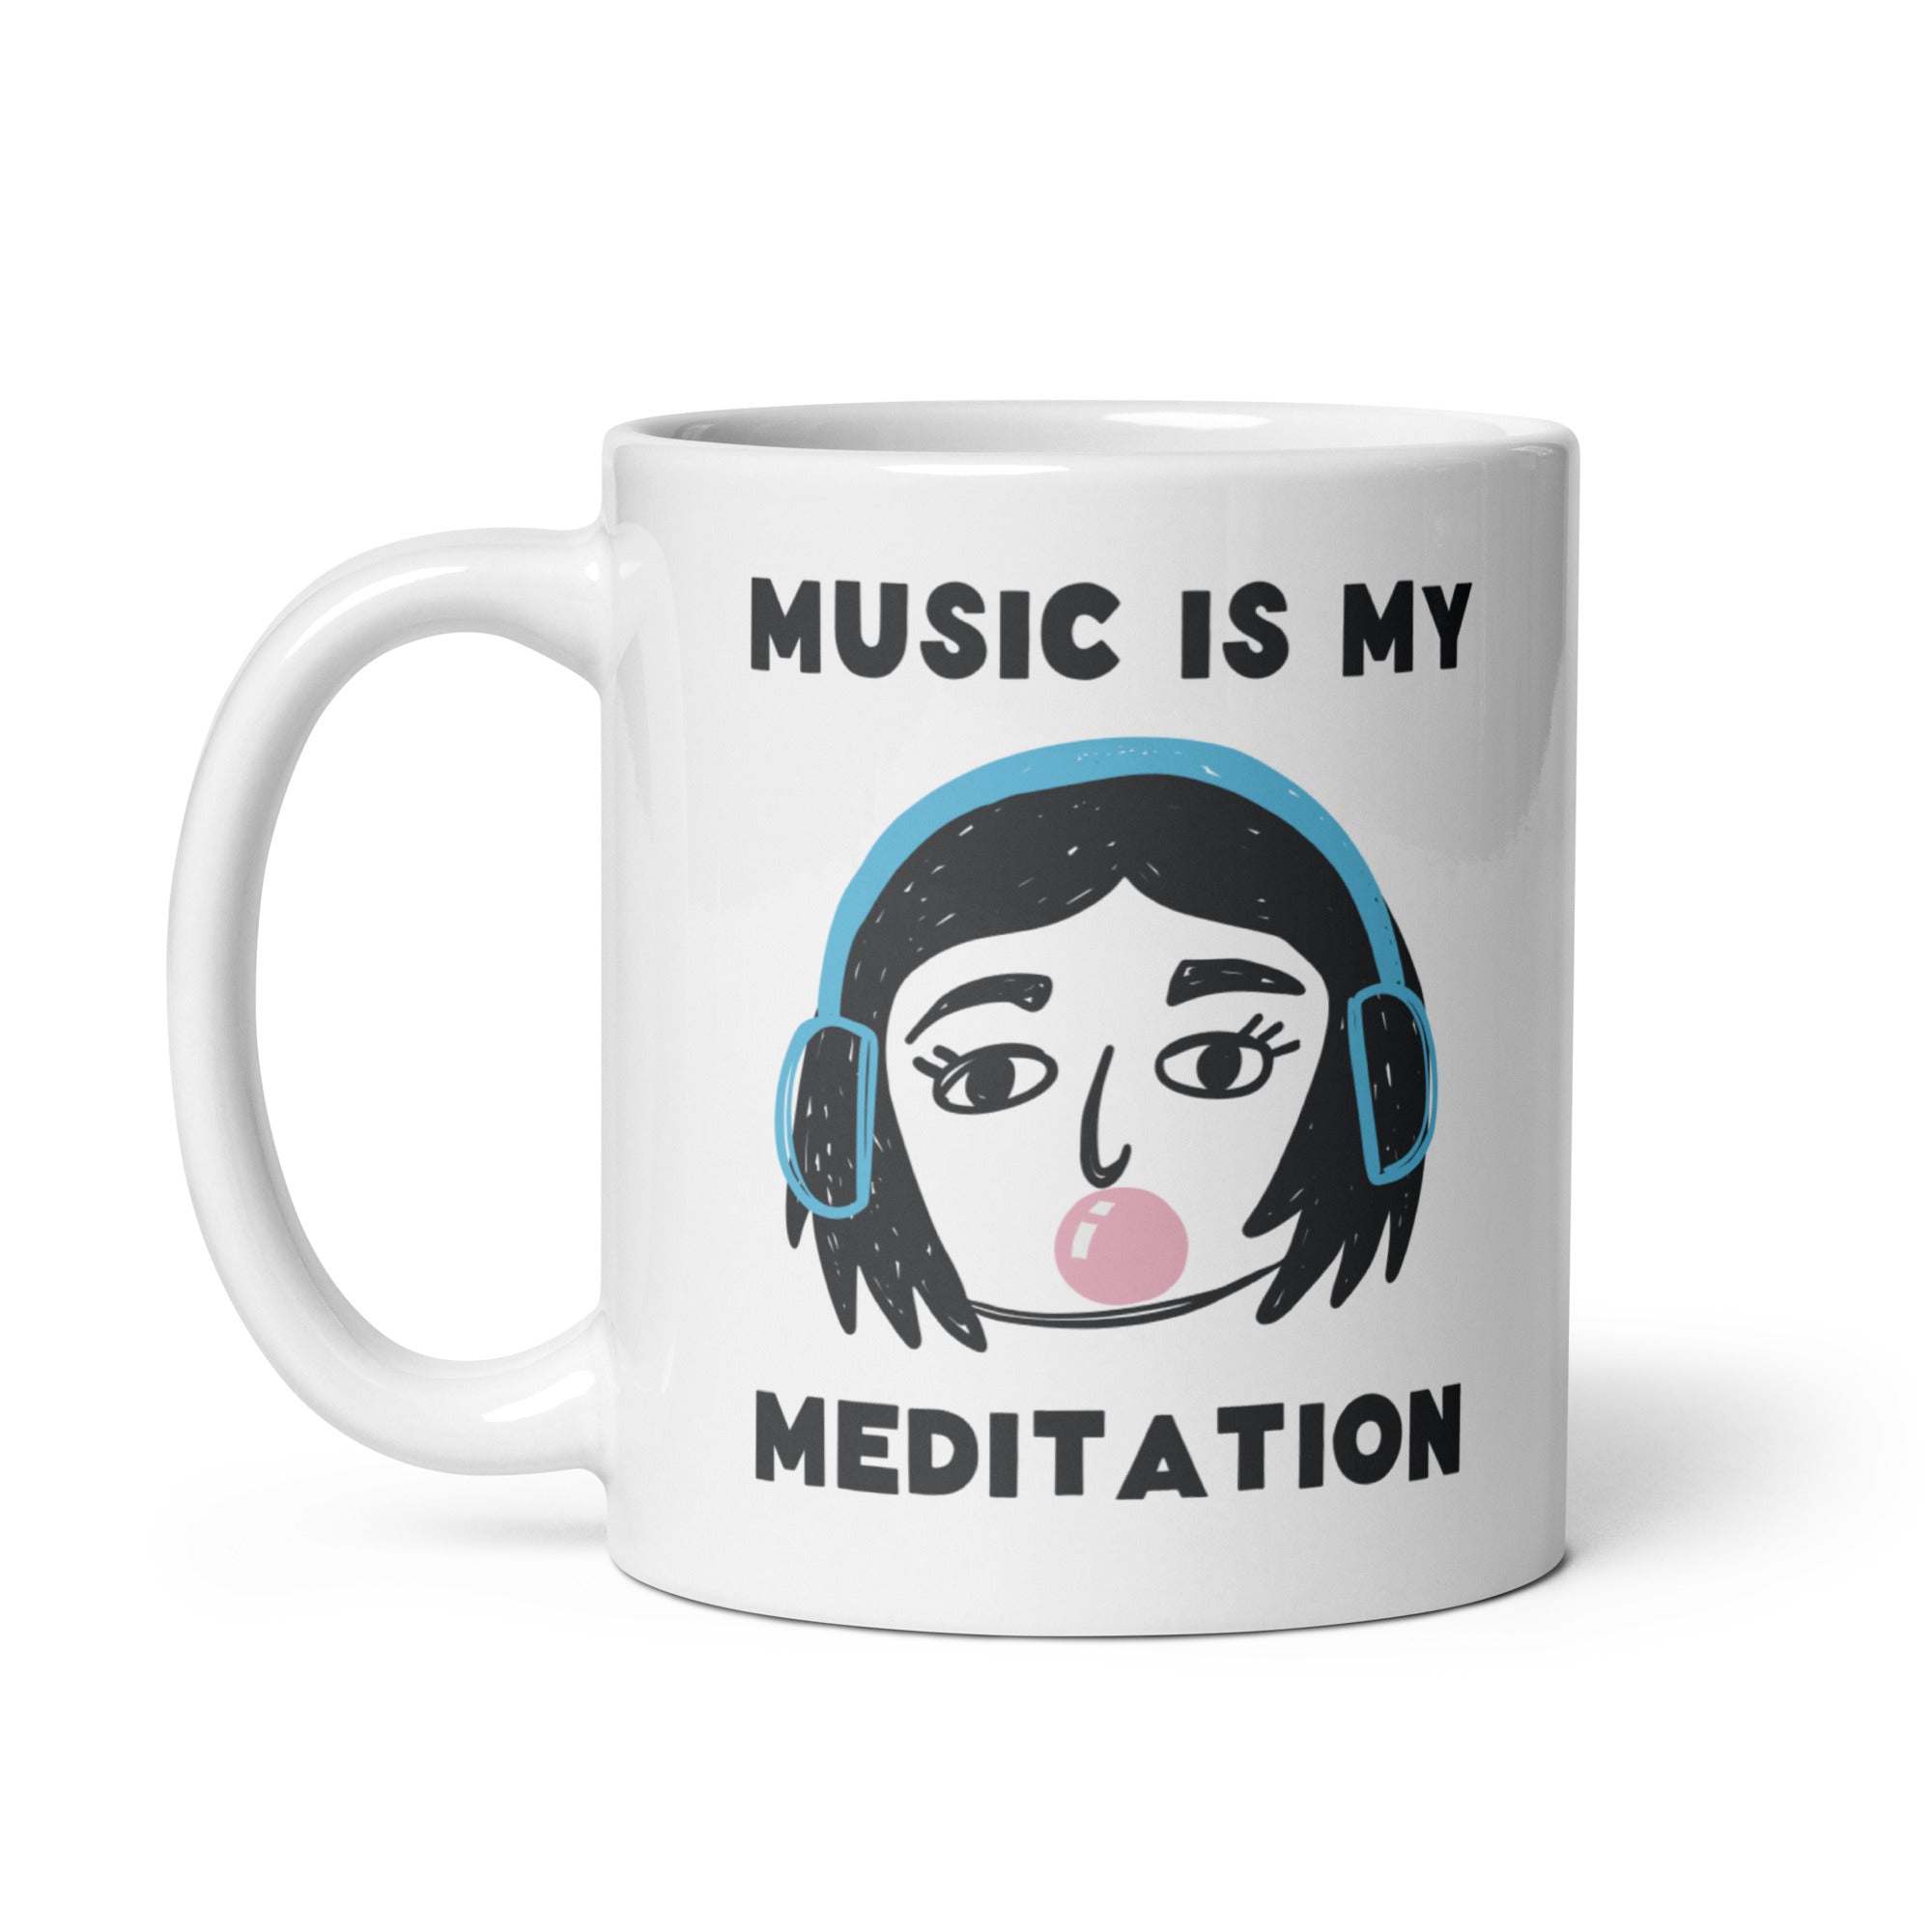 Meditation - Mug